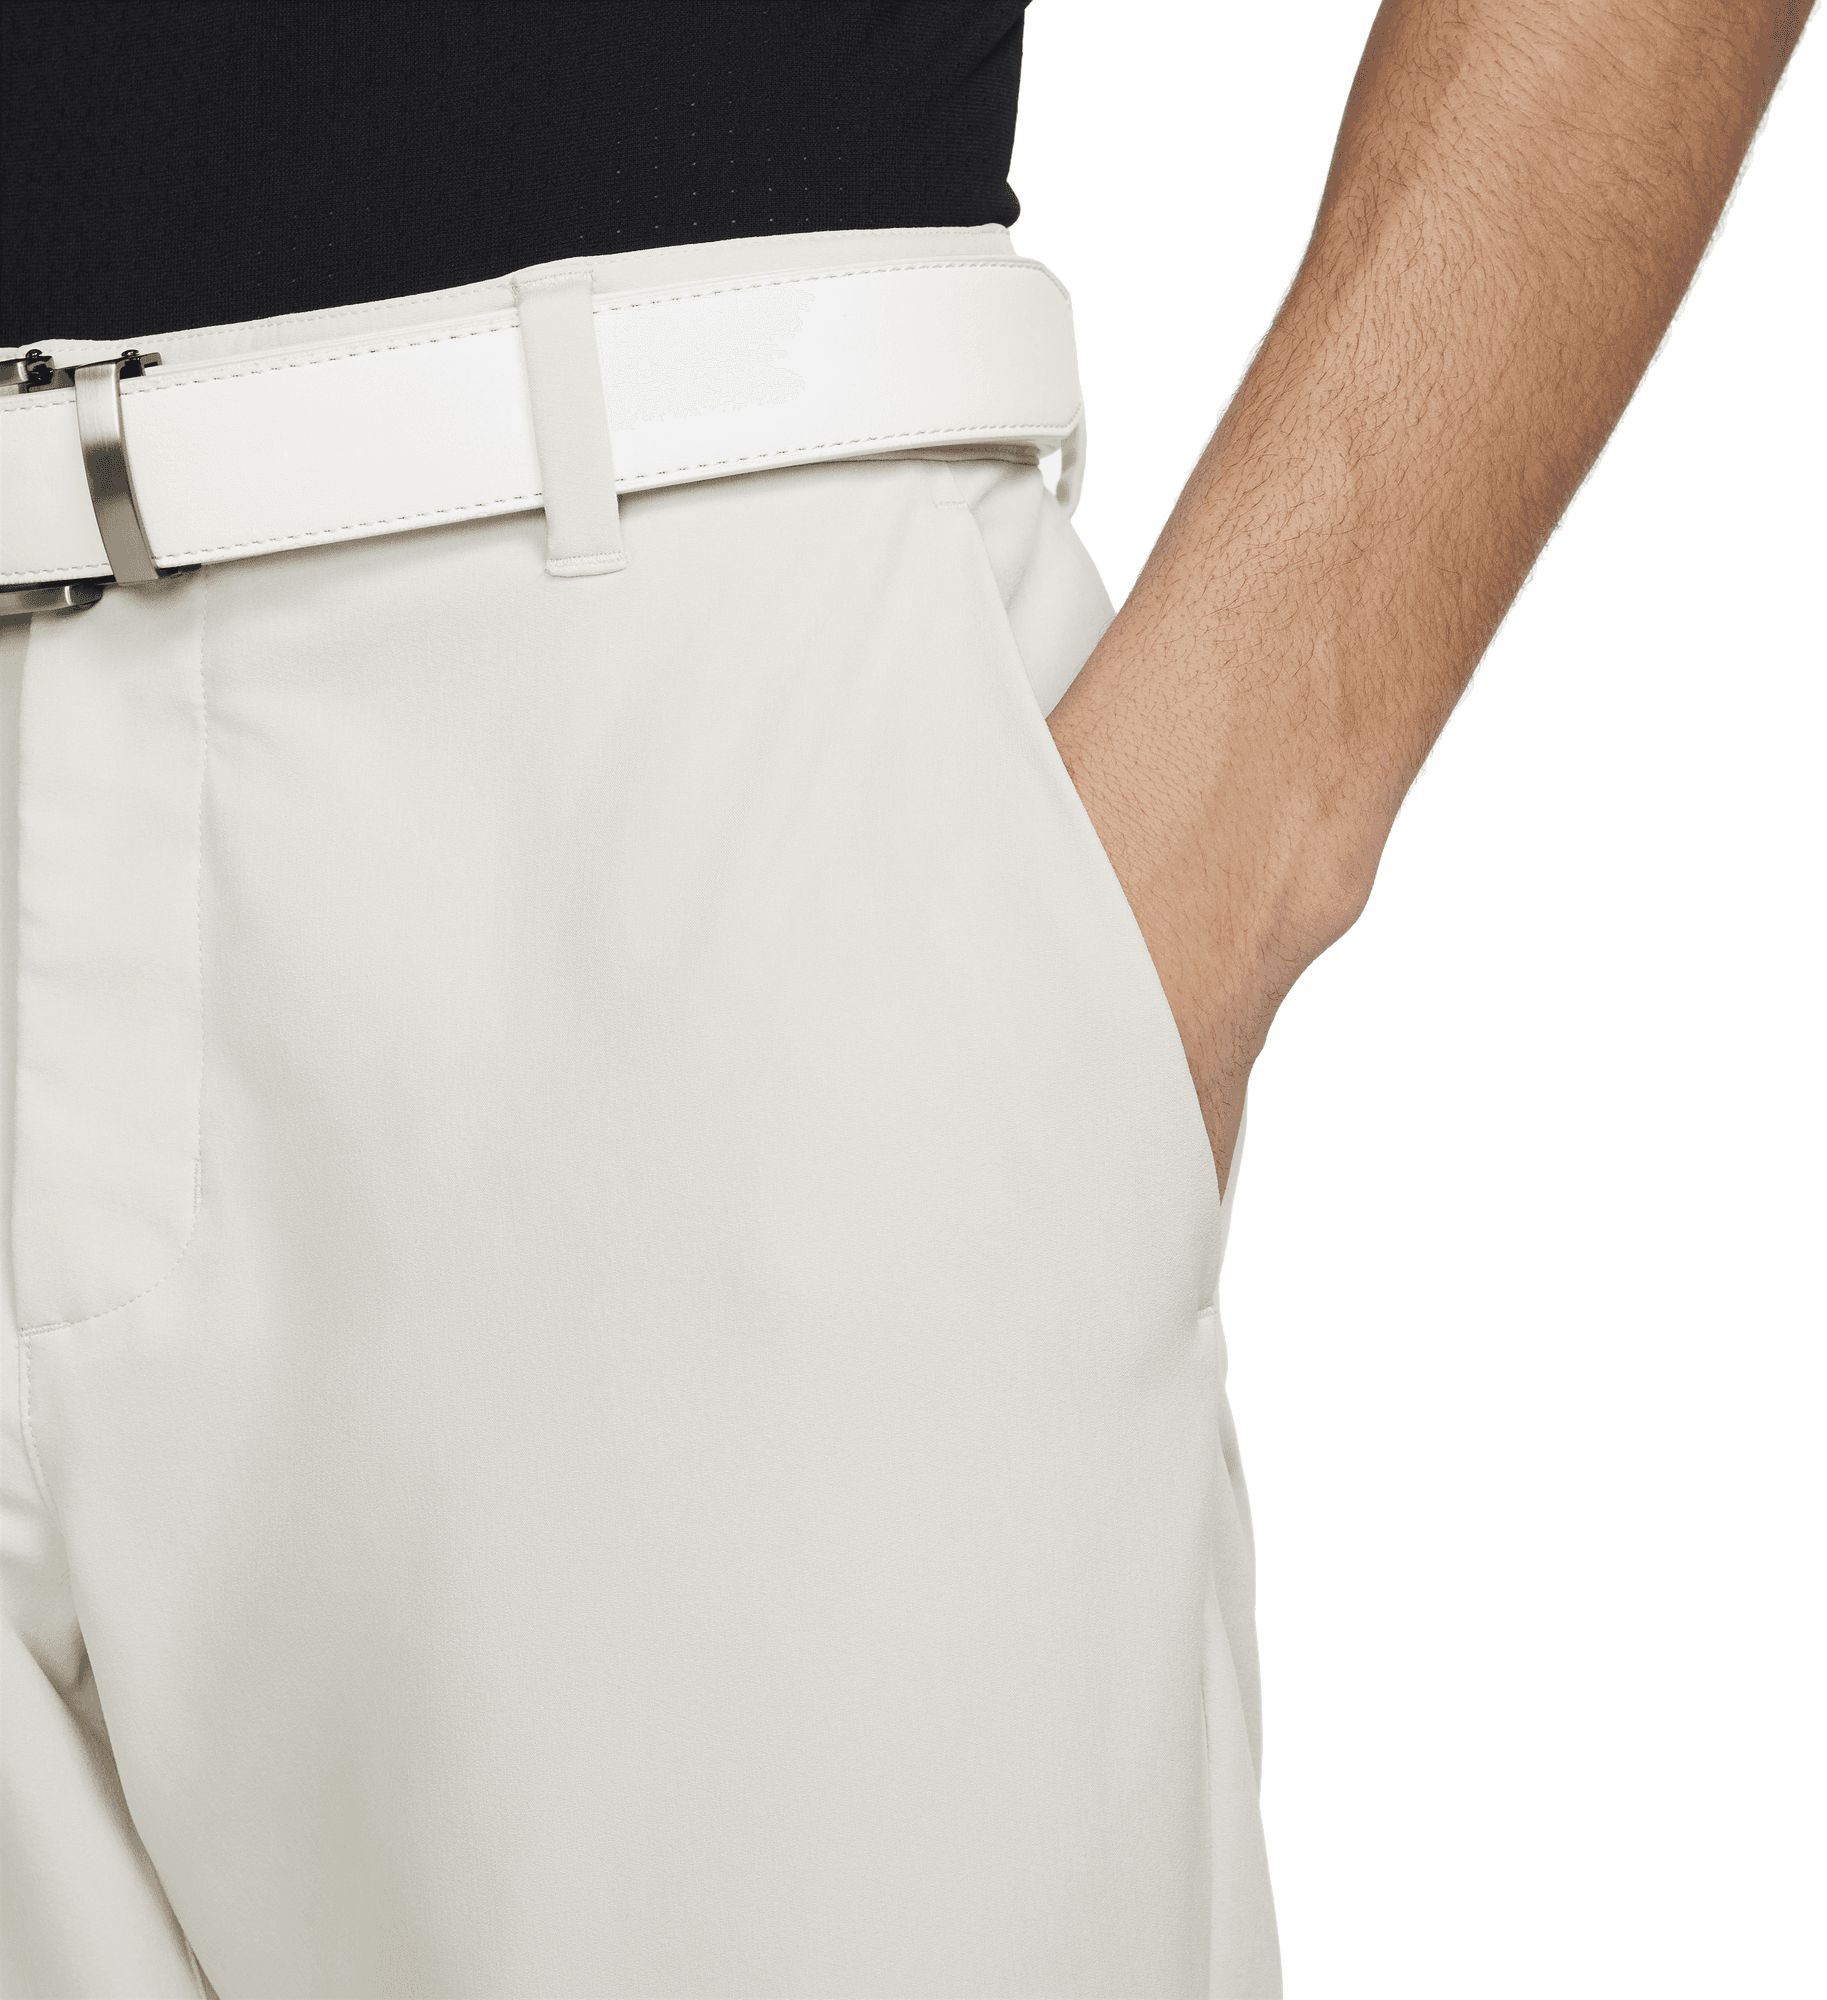 NIKE, Nike Tour Repel Flex Men's Slim Golf Pant